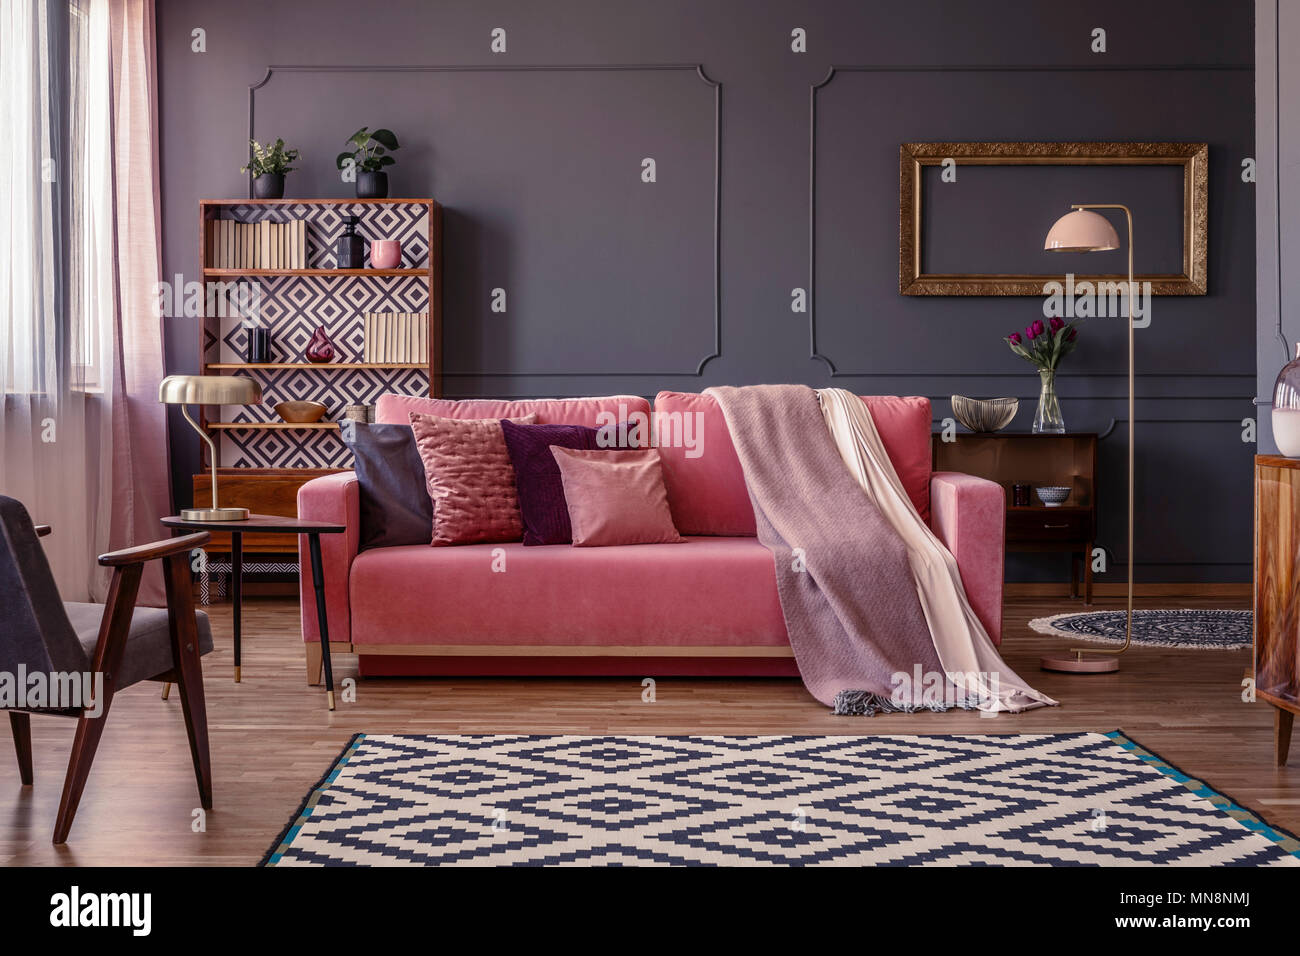 Rosa pastello coperta su un abbinamento divano nel soggiorno interno con elegante cornice dorata al buio su un muro grigio Foto Stock